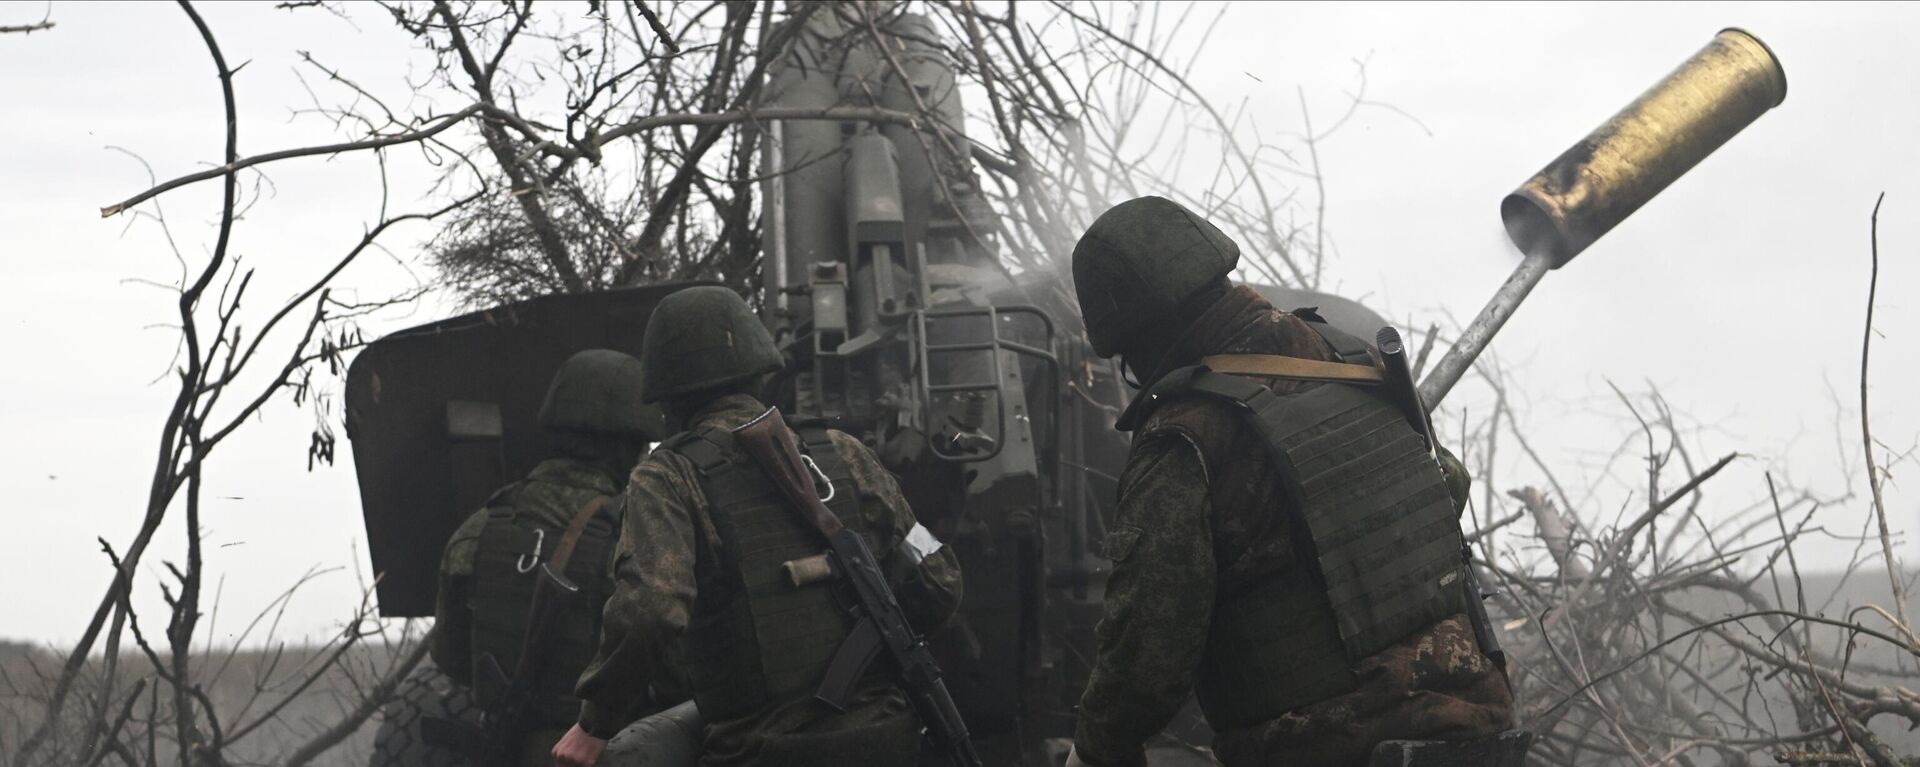 مدفعية القوات المسلحة الروسية تطلق النار على مواقع القوات المسلحة الأوكرانية من مدفع هاوتزر مستا-بي في المنطقة الجنوبية من منطقة العملية العسكرية الخاصة في أوكرانيا - سبوتنيك عربي, 1920, 23.04.2023